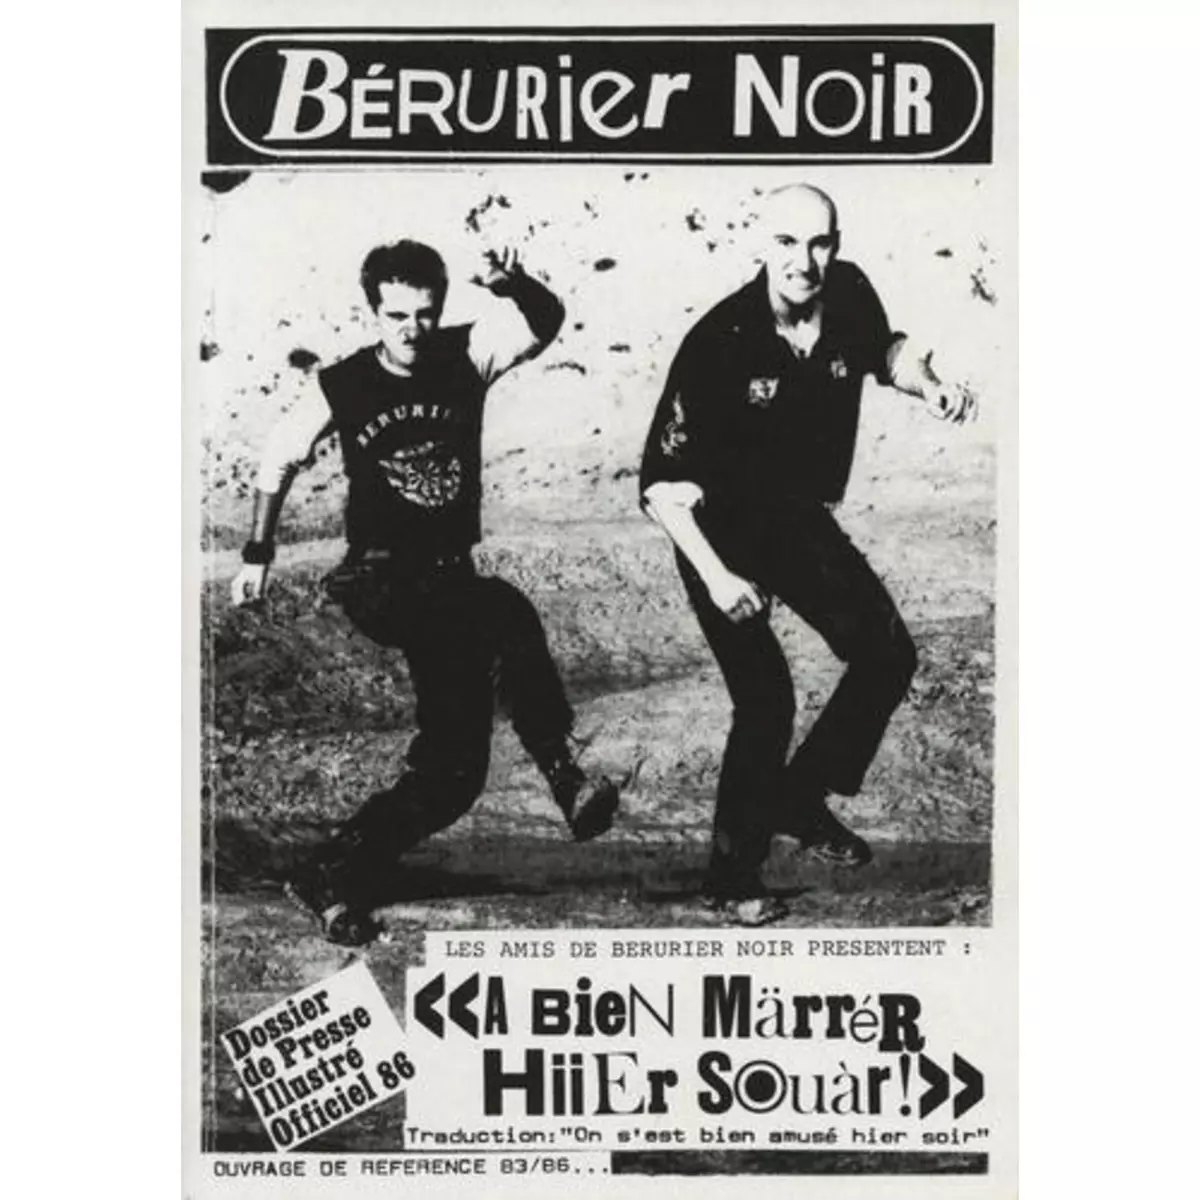  BERURIER NOIR. A BIEN MARRER HIIER SOUAR !, Bérurier Noir